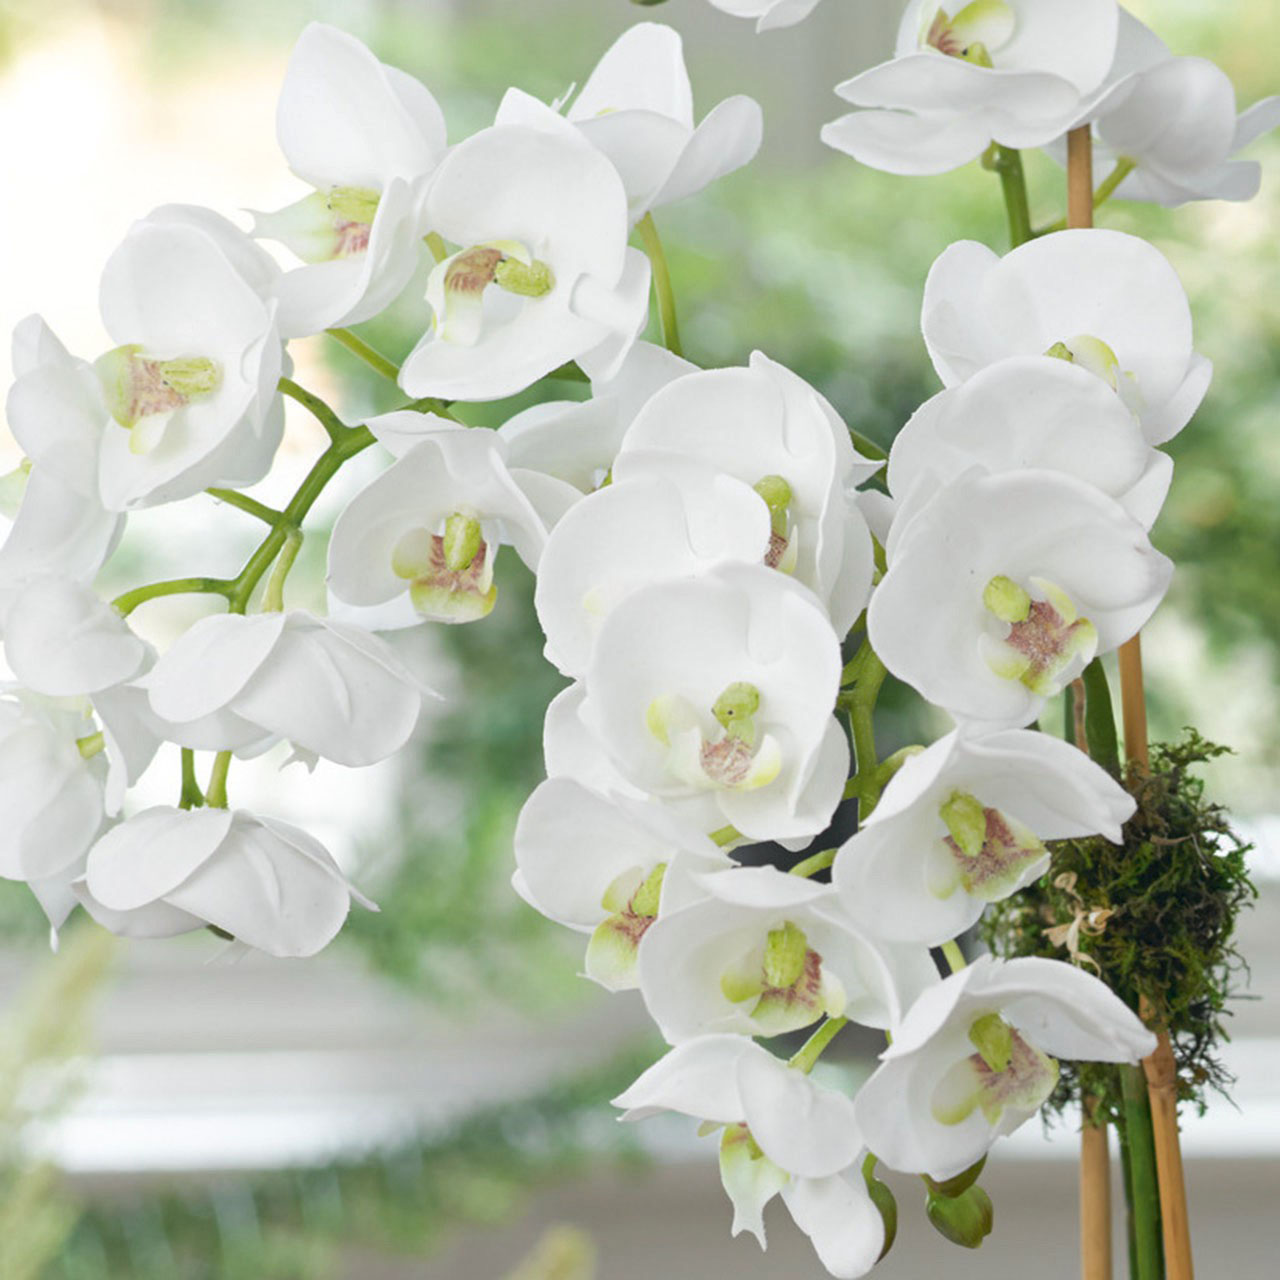 Triple Phalaenopsis Orchid